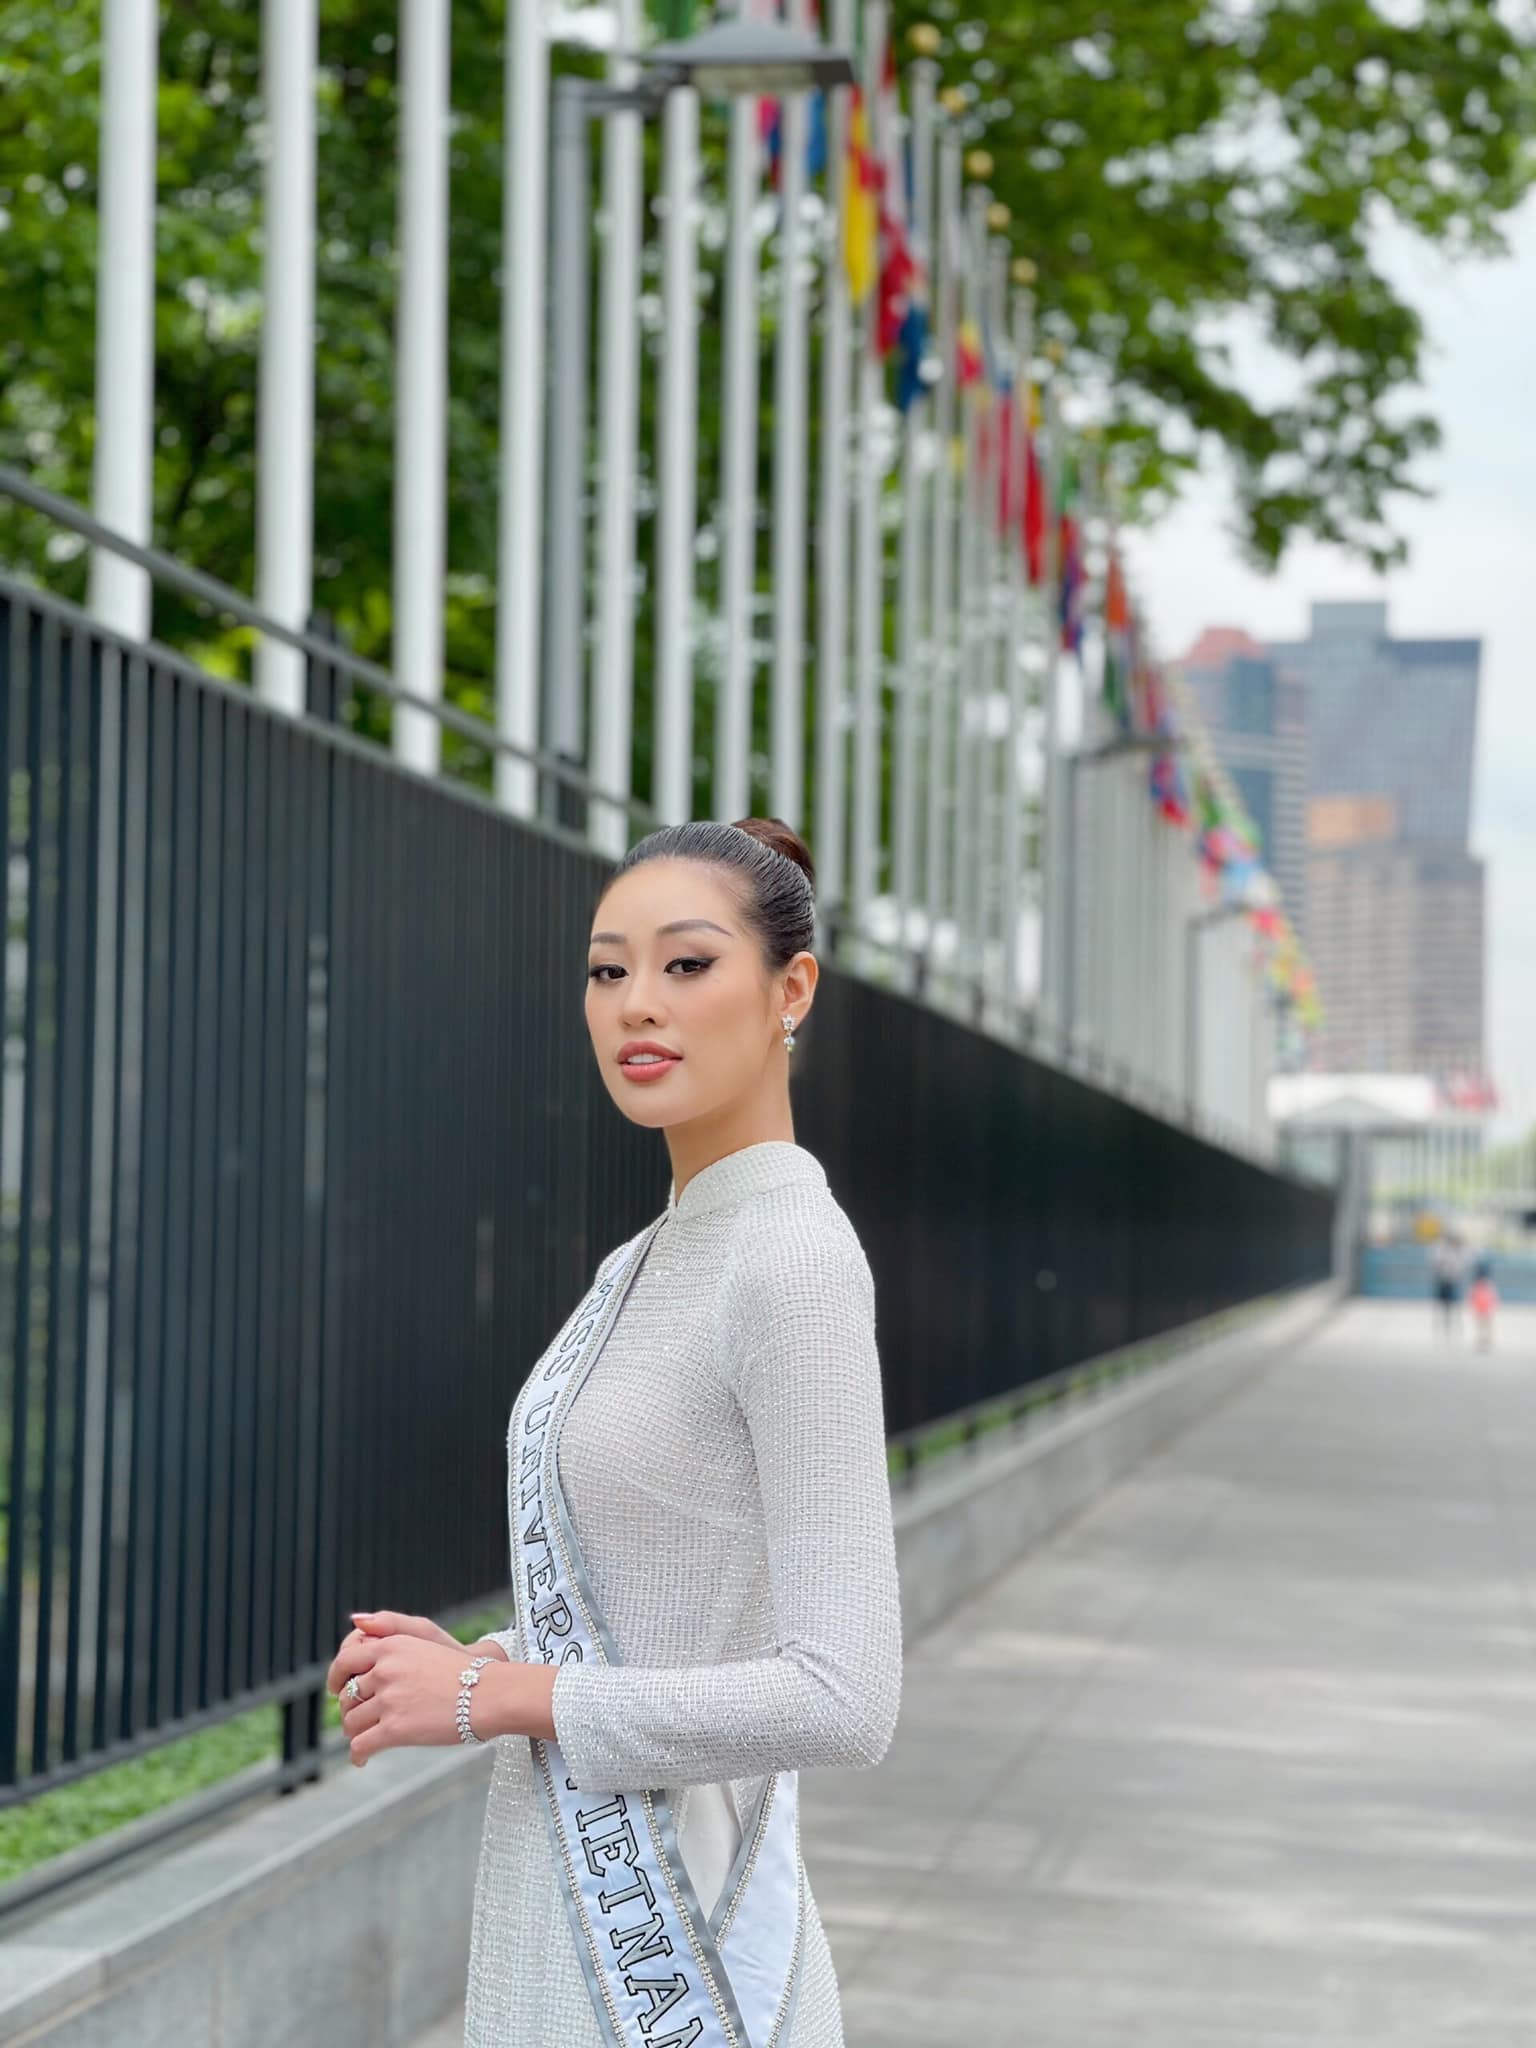 Hoa hậu Khánh Vân khoe dáng với Áo dài Việt Nam trên đường phố NewYork, đúng là 'nữ thần Áo dài' có khác! - ảnh 7